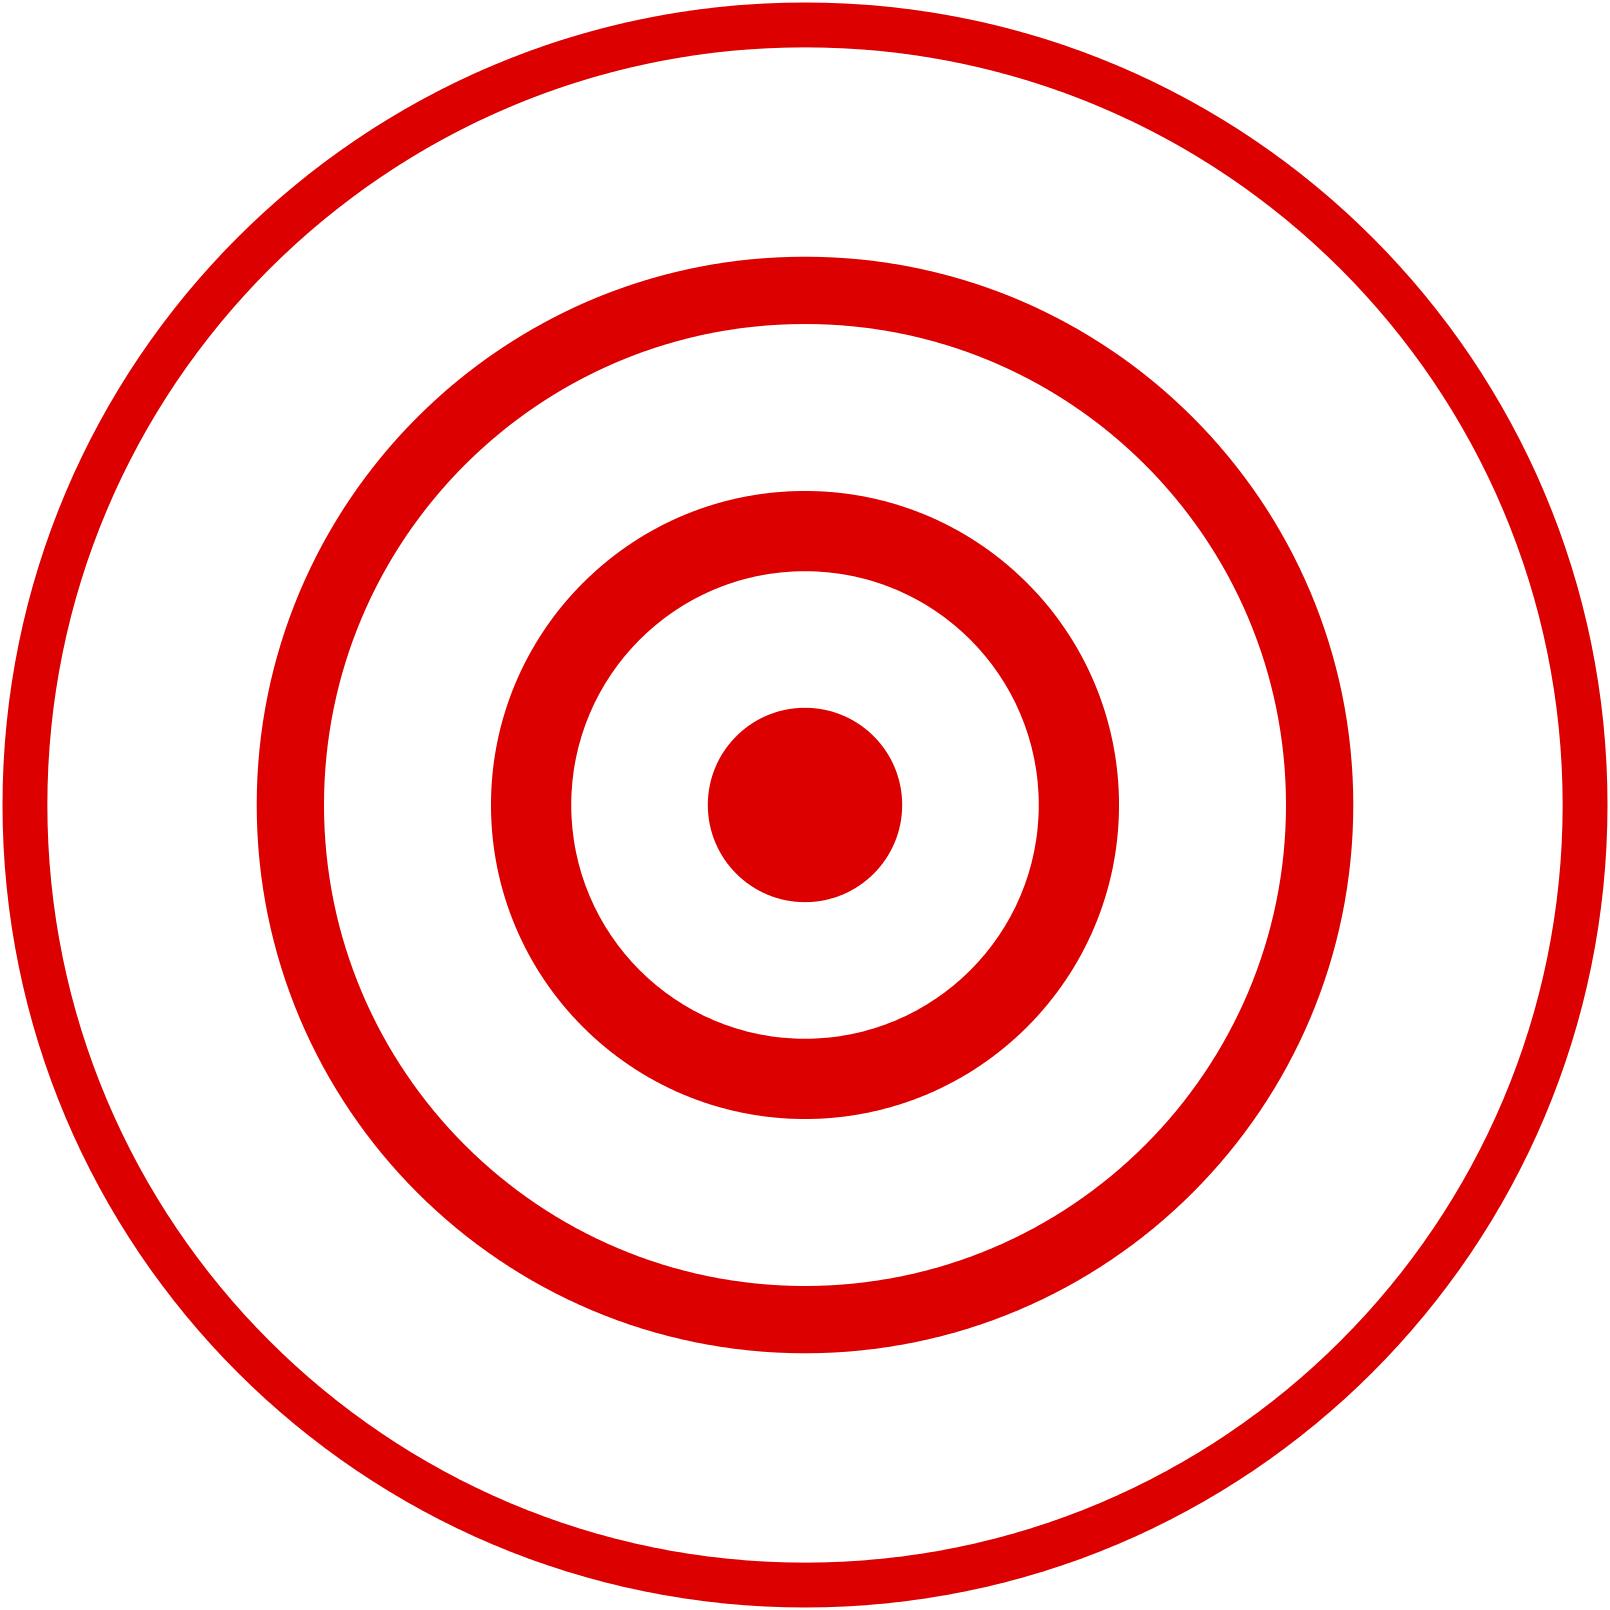 Bullseye Shooting Target Clip Art Eye Png Download 1610 1610 Free 